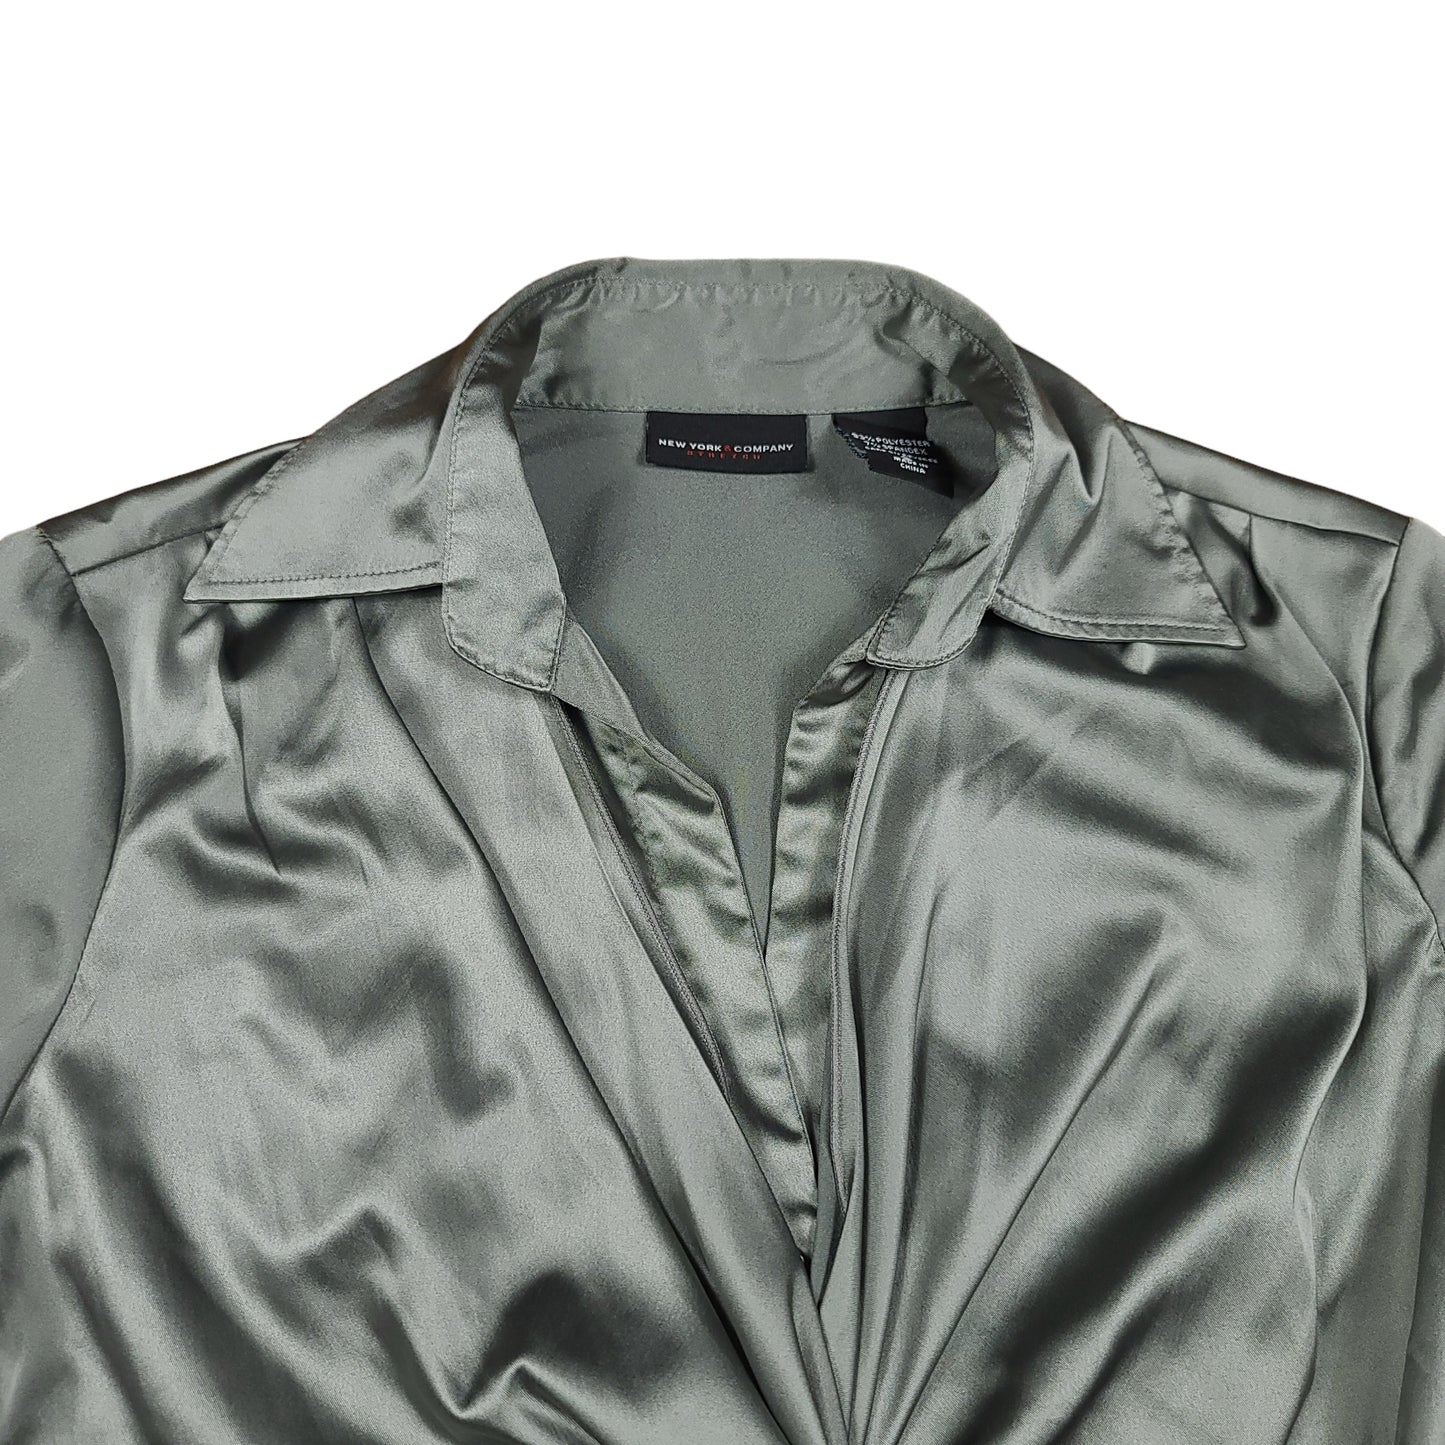 New York & Company Gray Shirt